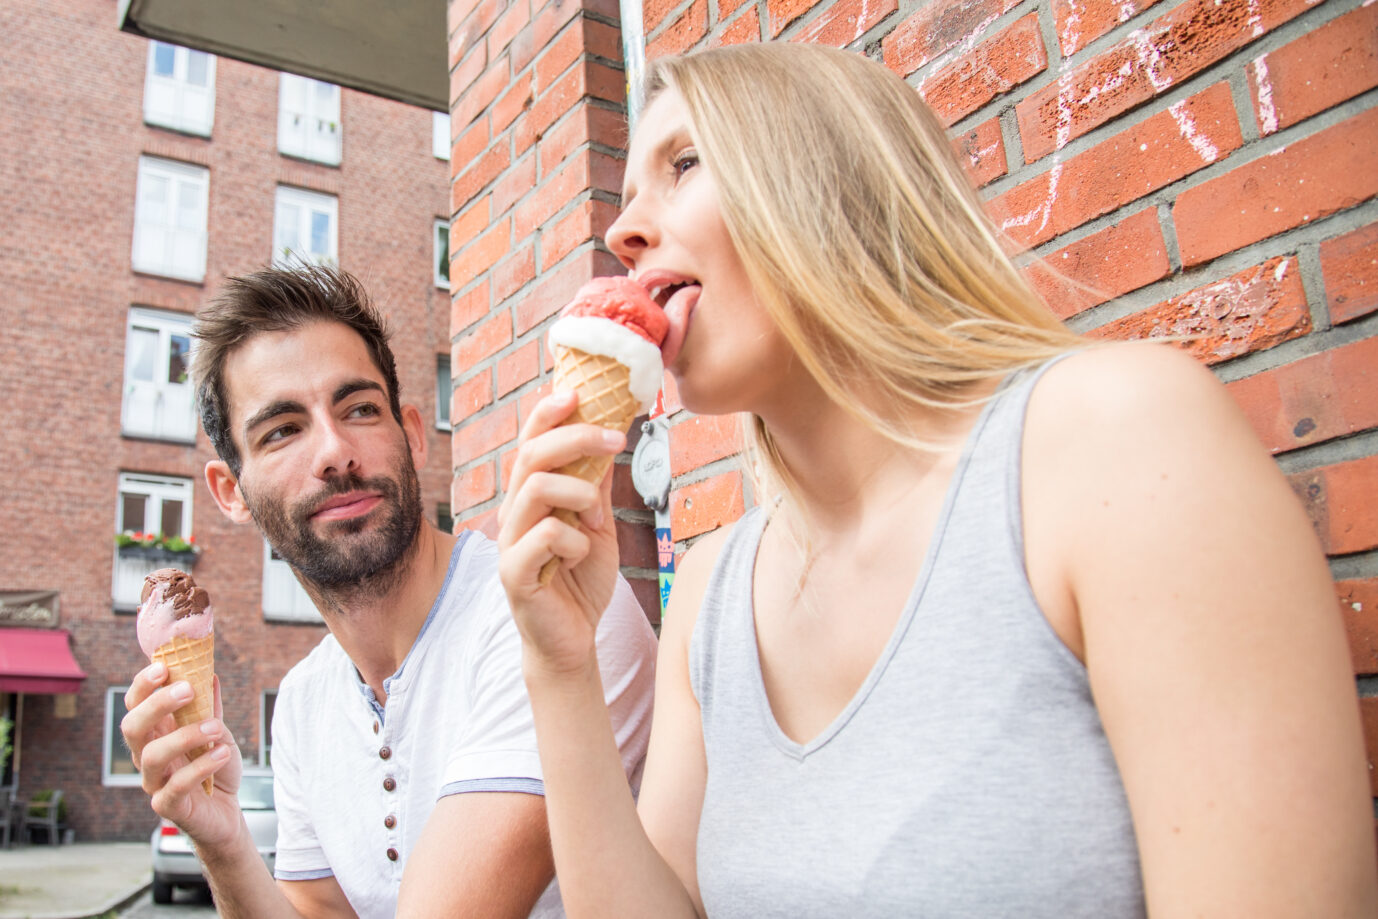 Mann und Frau beim Eisessen: Ist es öbszön, dies in der Öffentlichkeit zu tun?